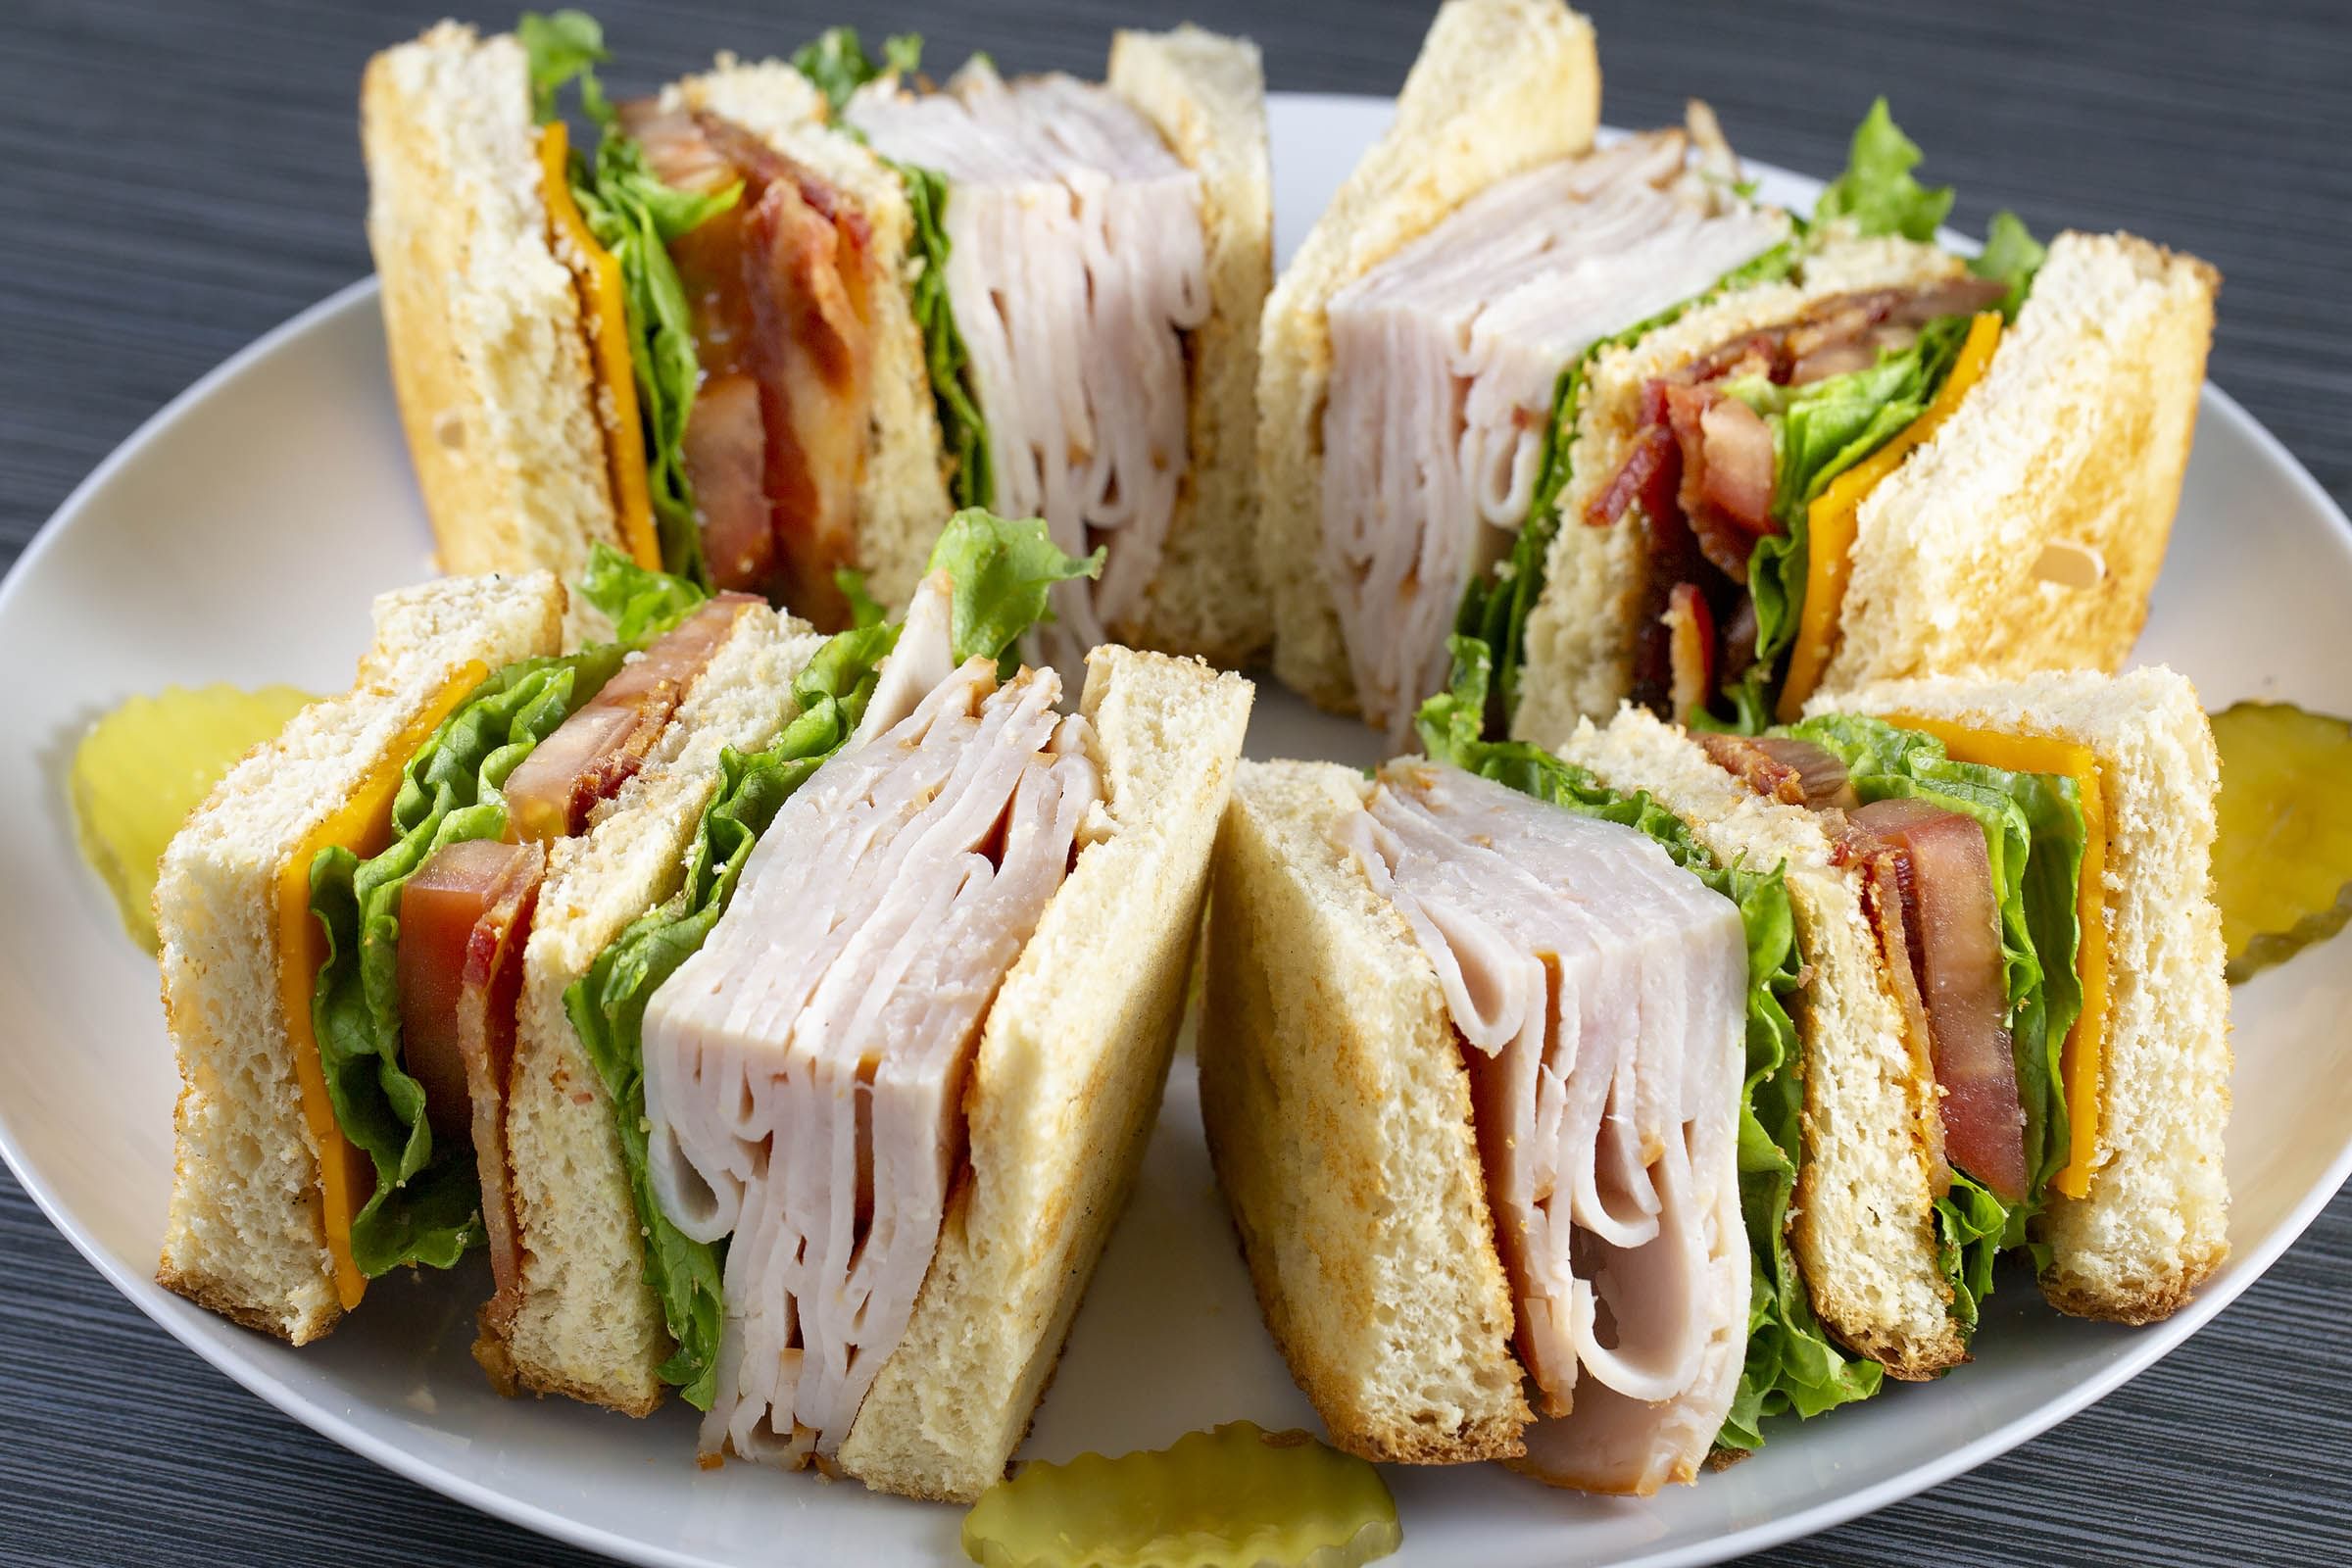 82. Club House Sandwich